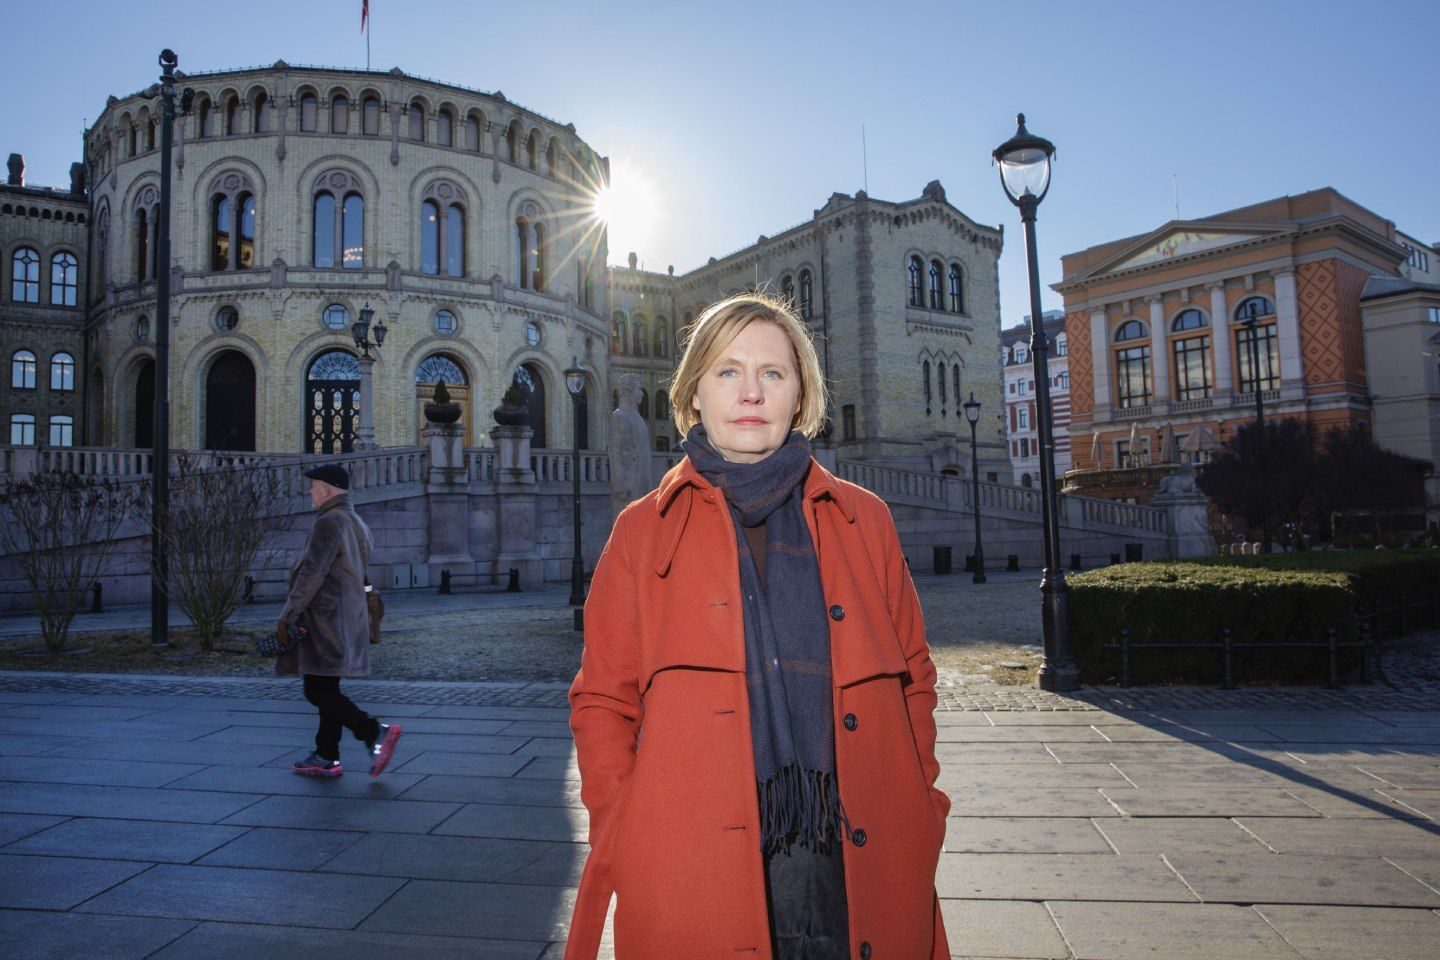 Mari Teigen, likestillingsforsker, utenfor stortinget i Oslo. En mann passerer henne i bakgrunn. 